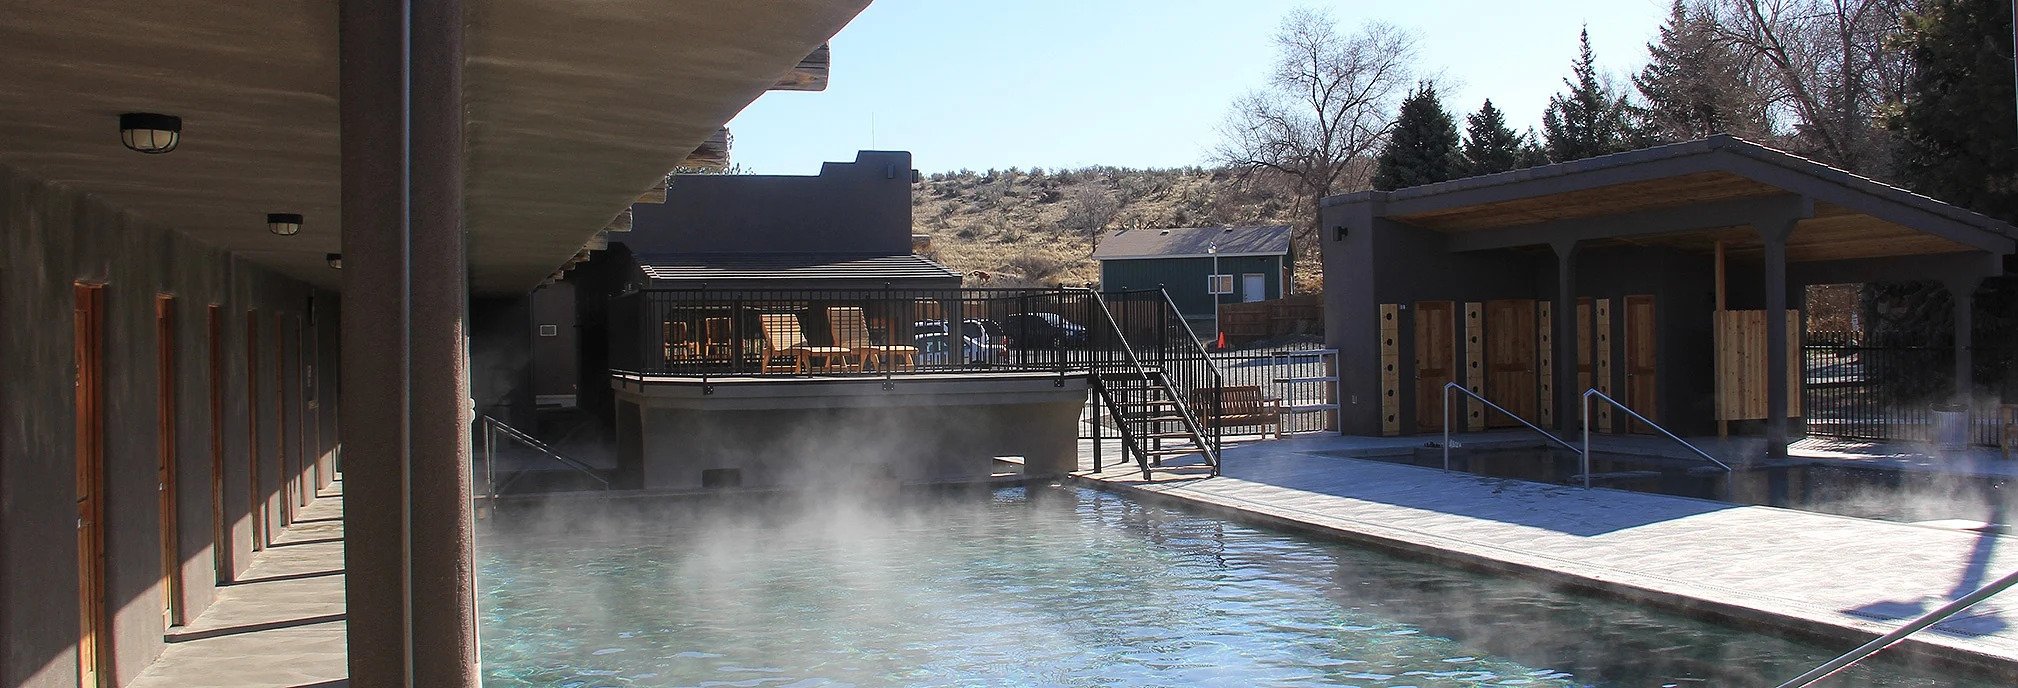 Miracle Hot Springs, Hot Springs, VIP Pools, Winter